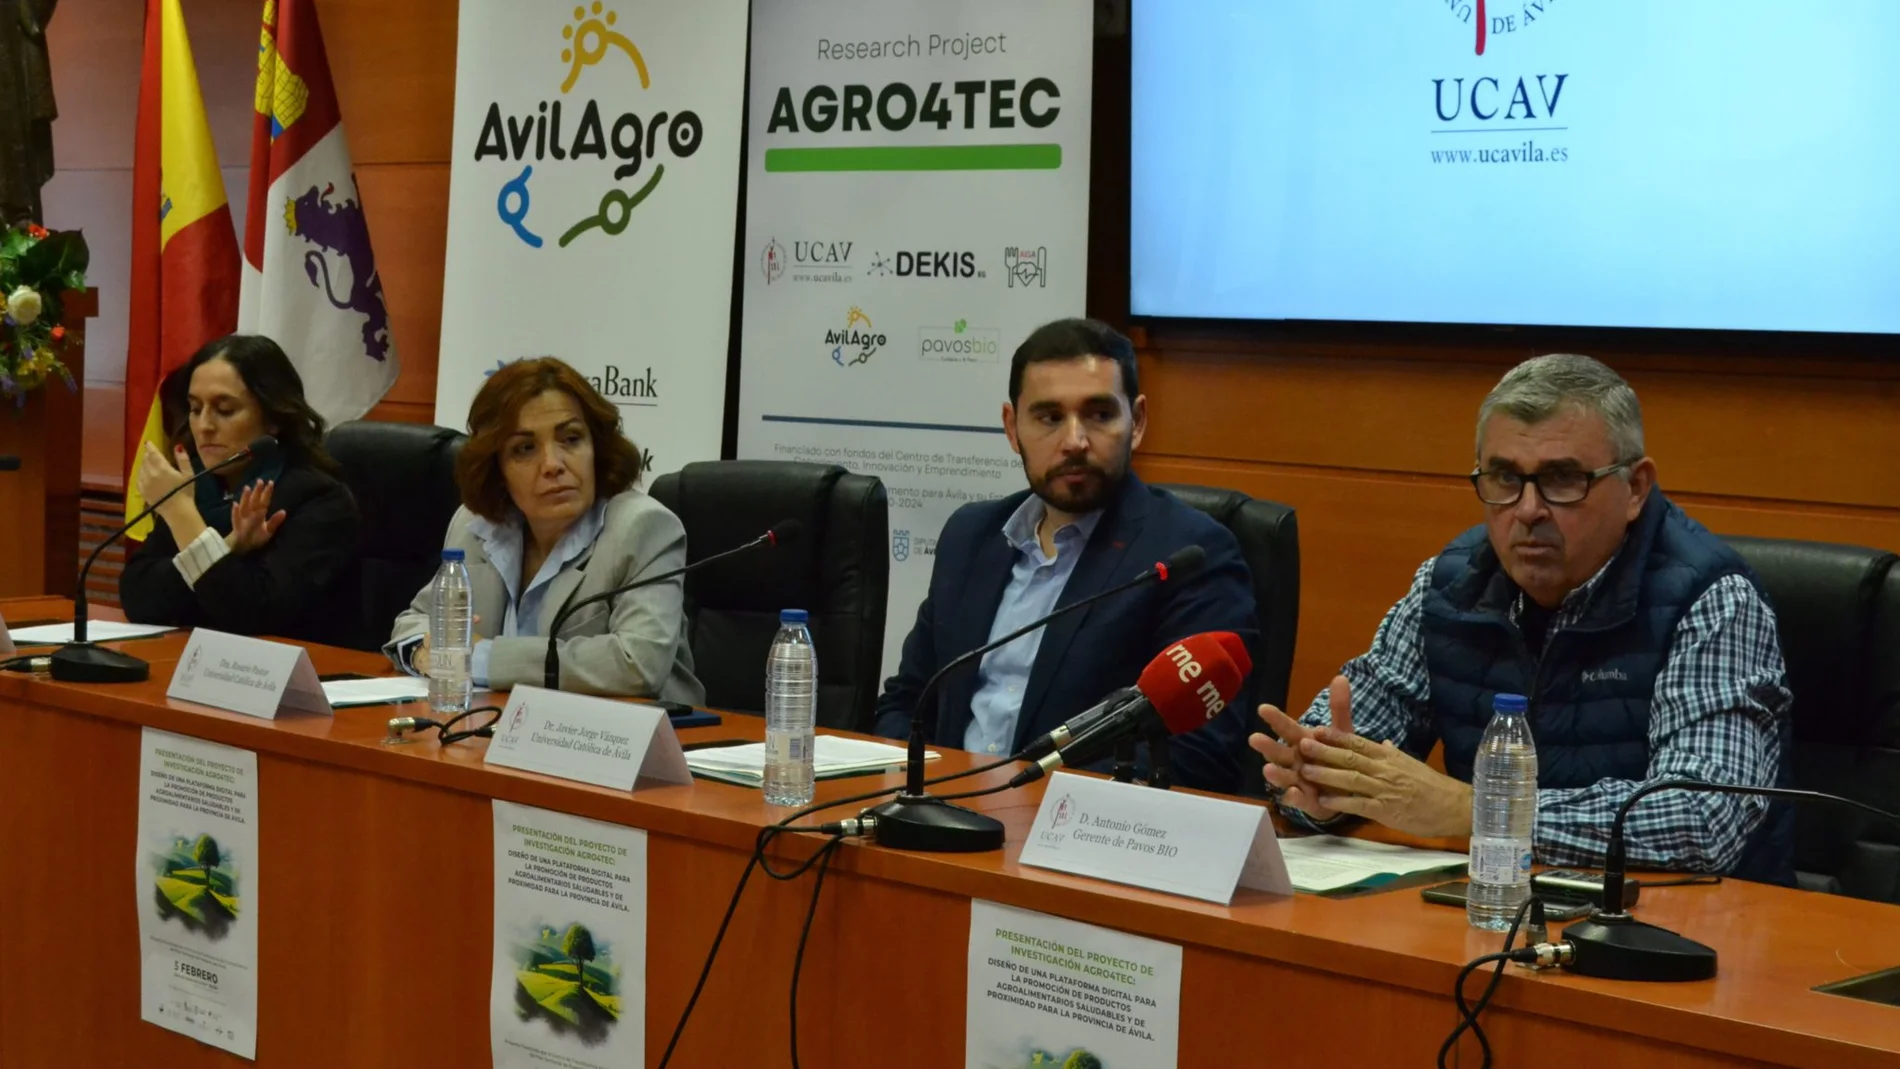 Presentación del proyecto de investigación Agro4tec en la UCAV